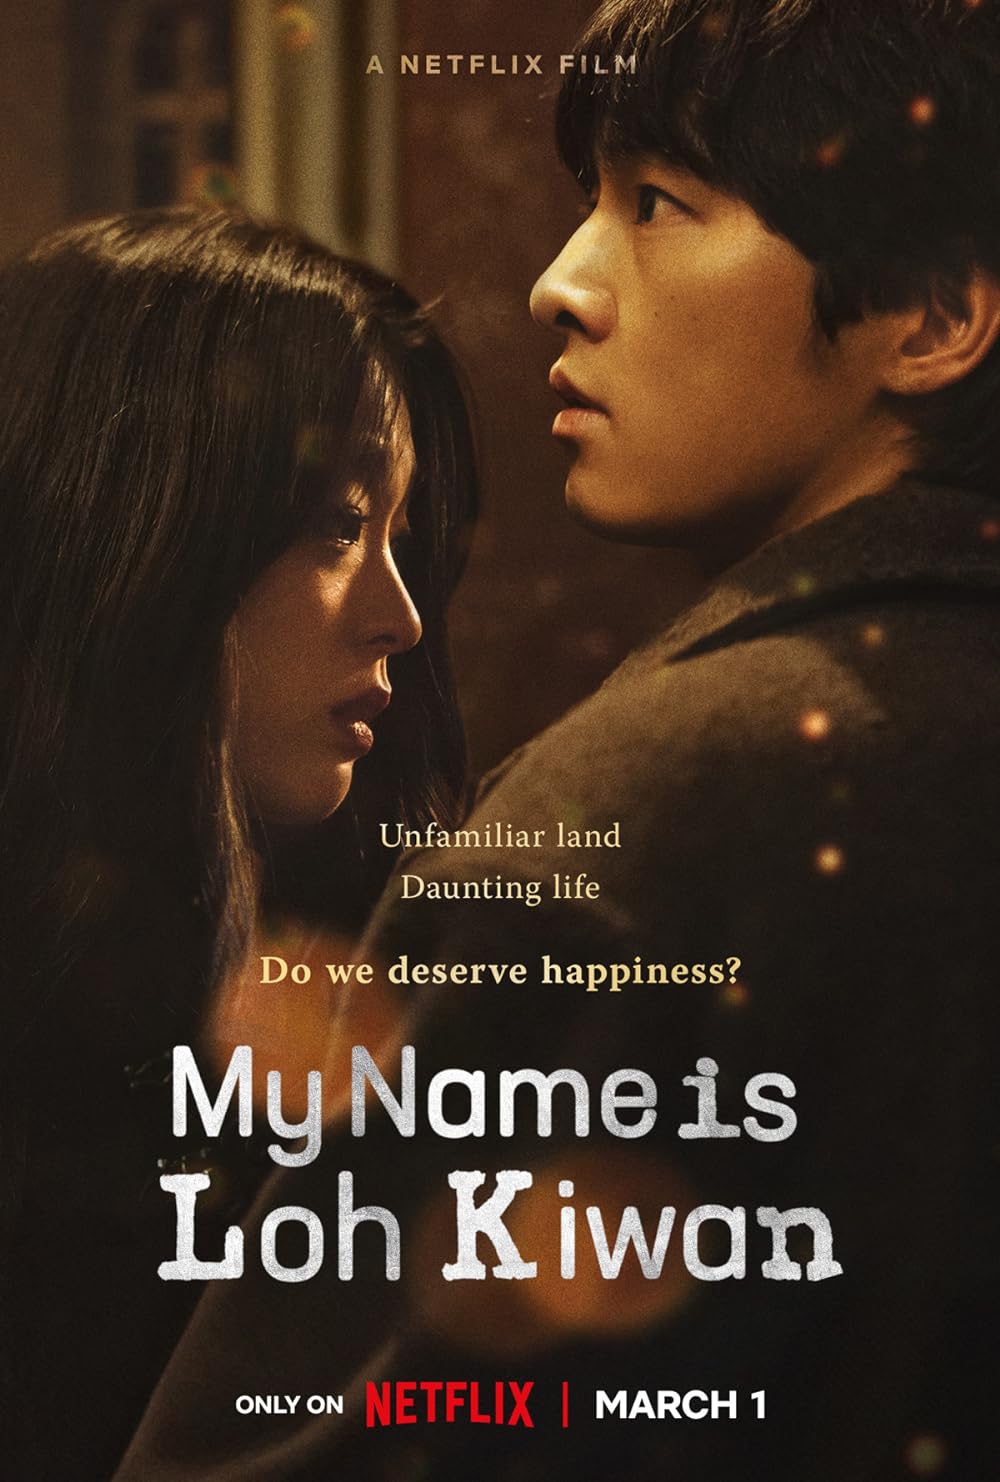 Фильм "Меня зовут Ло Киван" достиг первой позиции в глобальном рейтинге фильмов Netflix